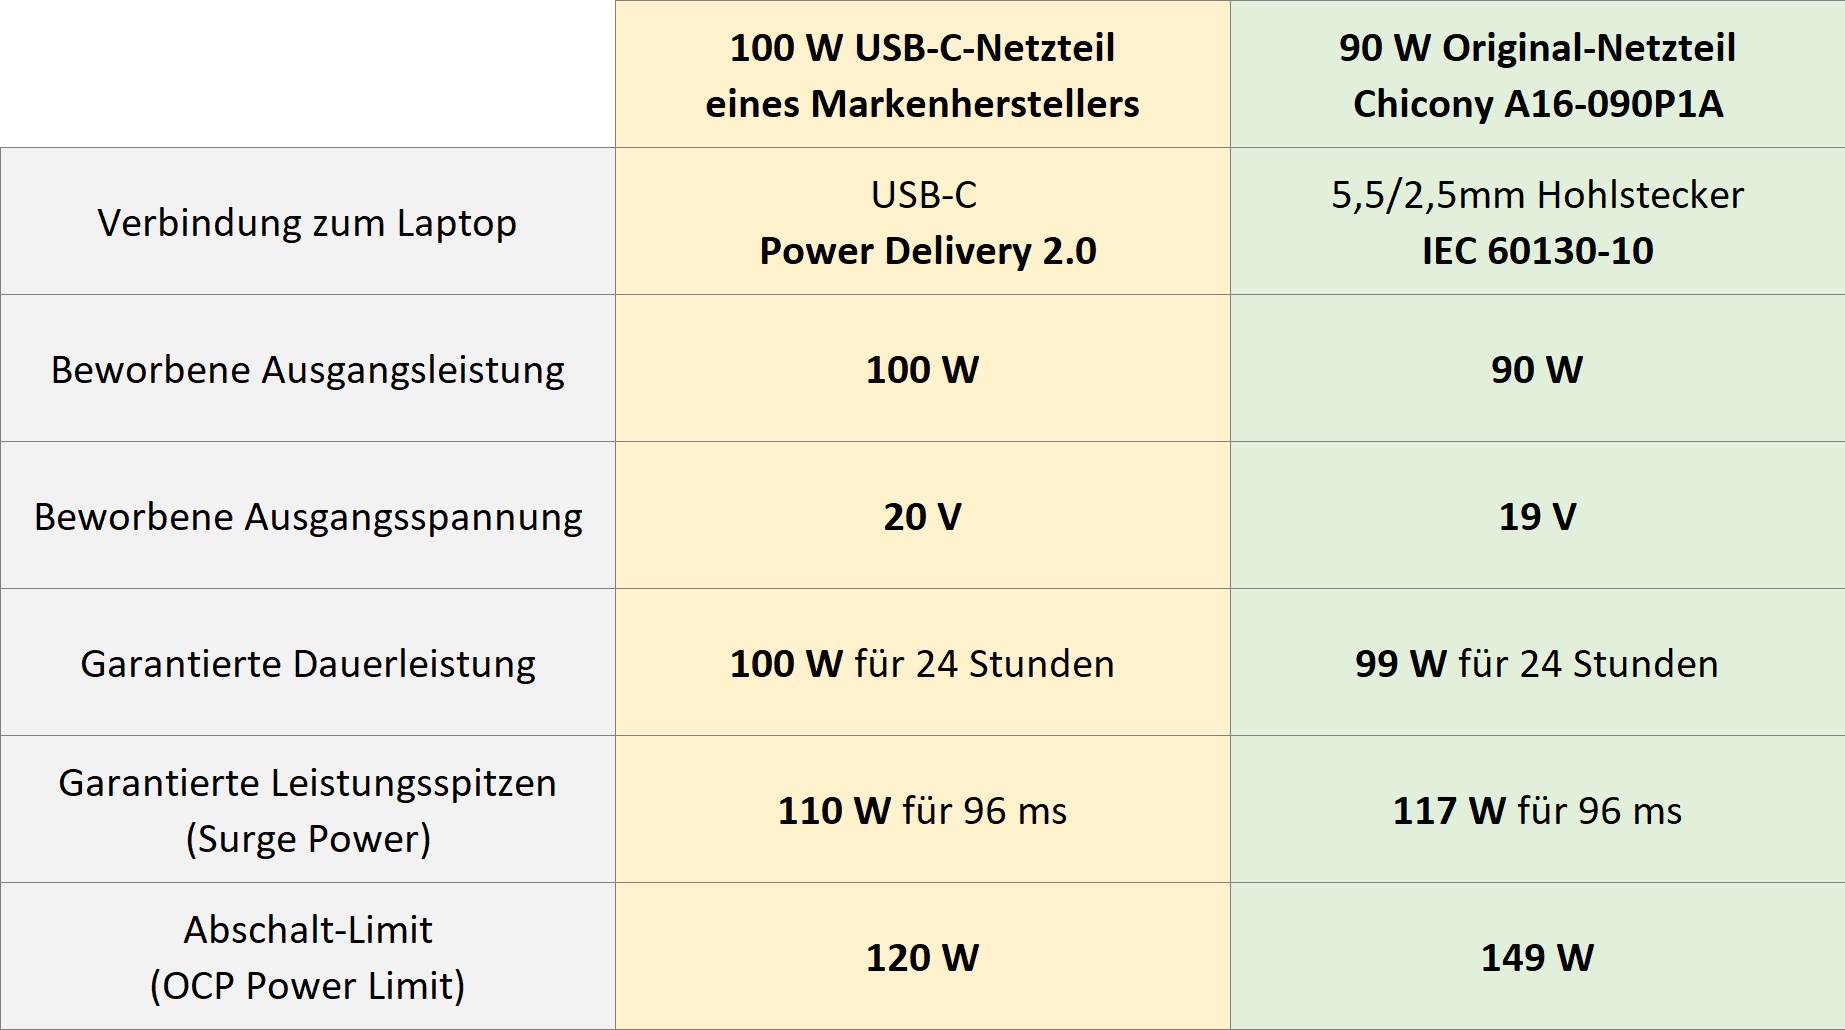 90w-original-vs-100w-usb-c_comparison-table_de.png